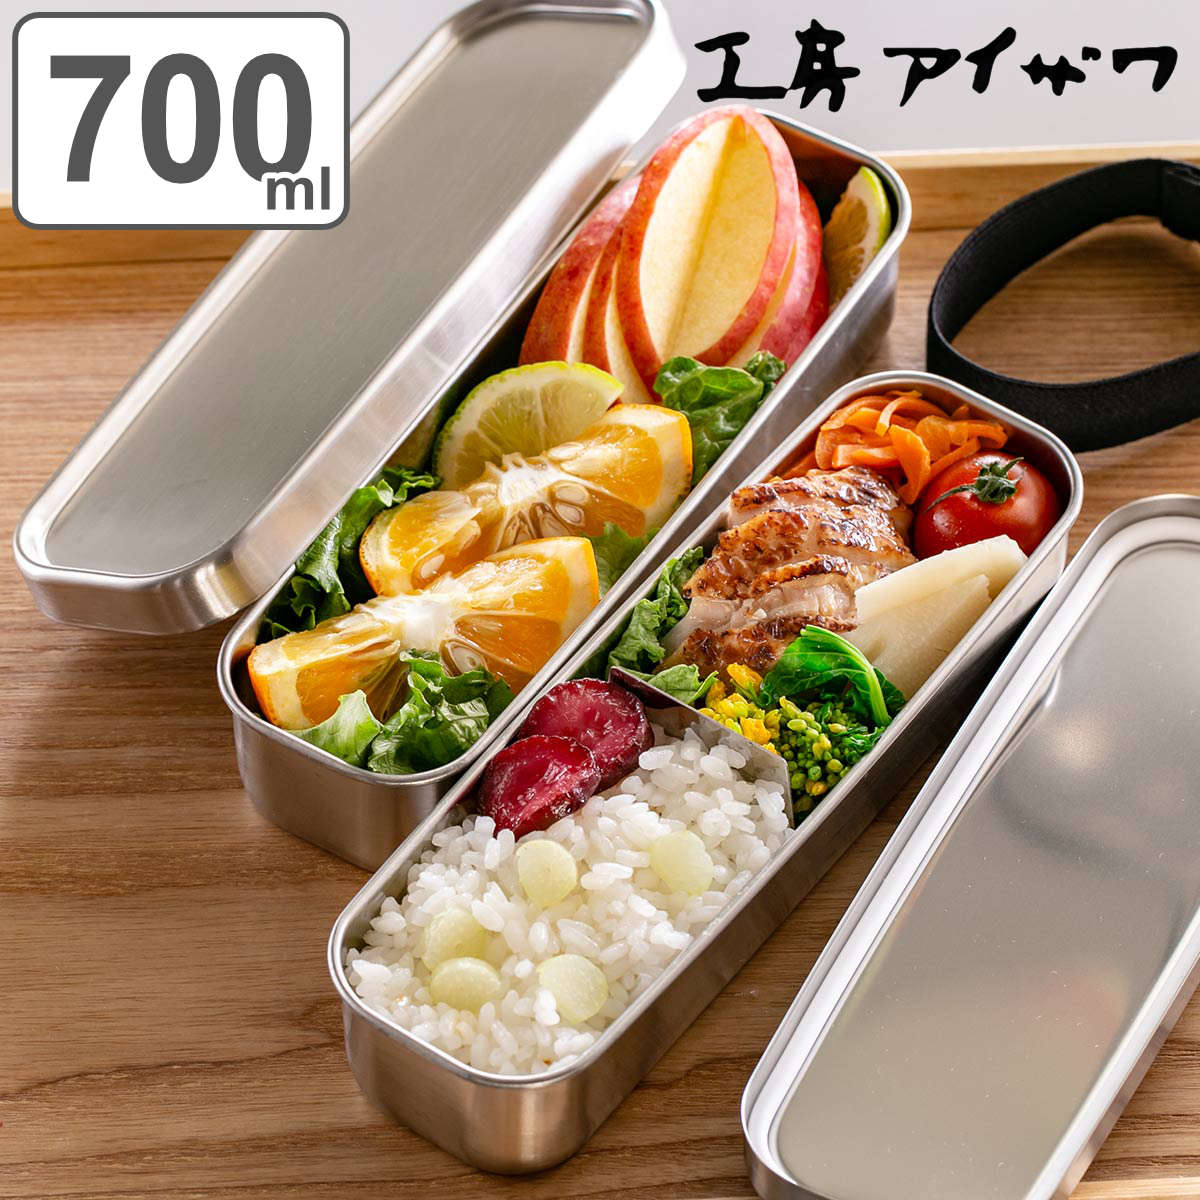 Aizawa Square Shape Lunch Box Large